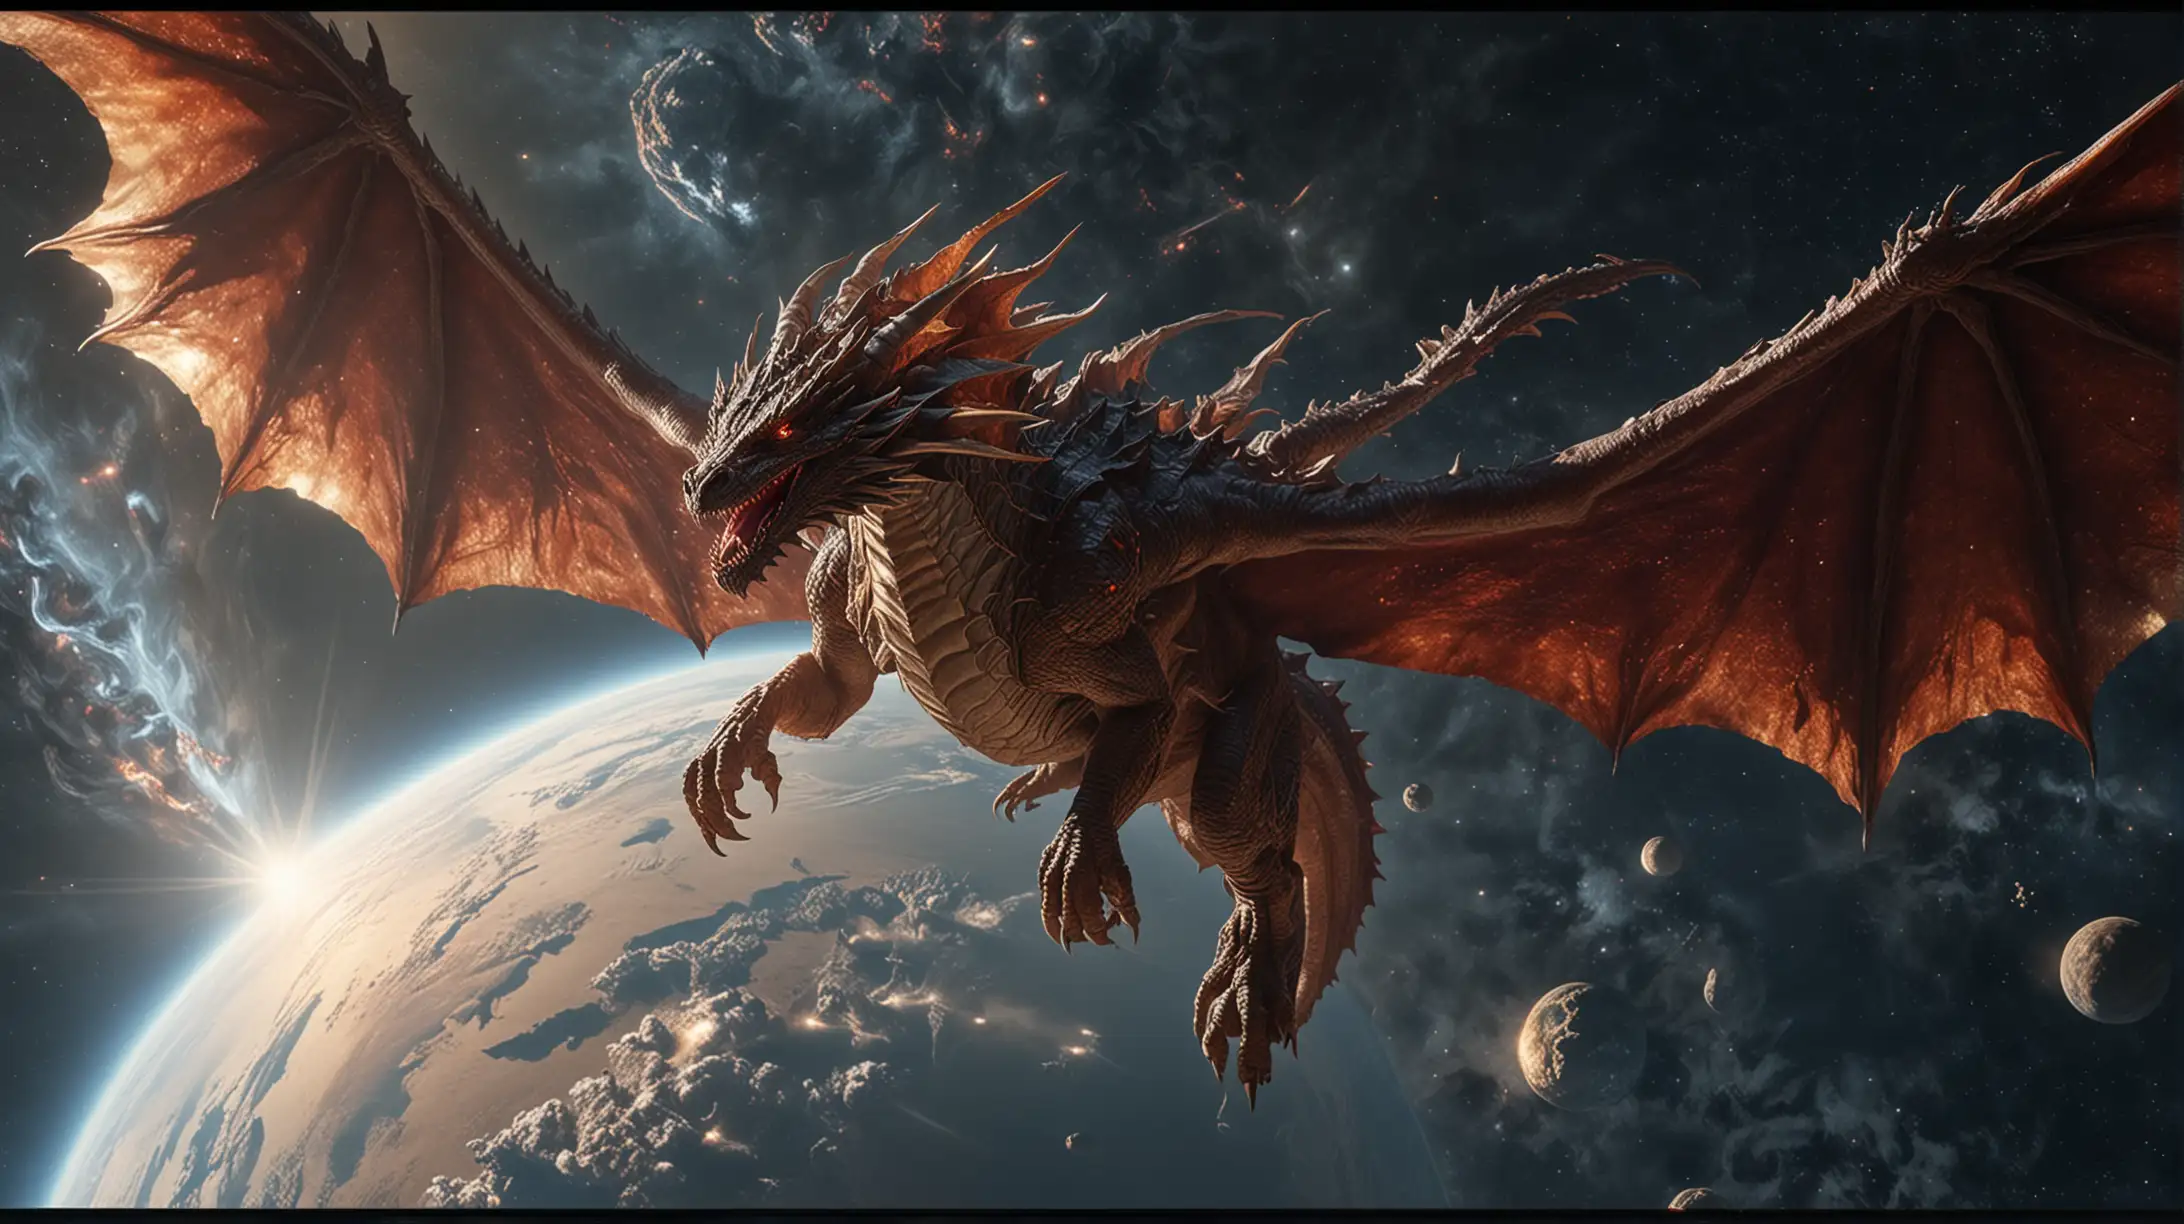 Majestic Order Dragon Soaring in Space Hyperrealistic 8K Ultra HD Art